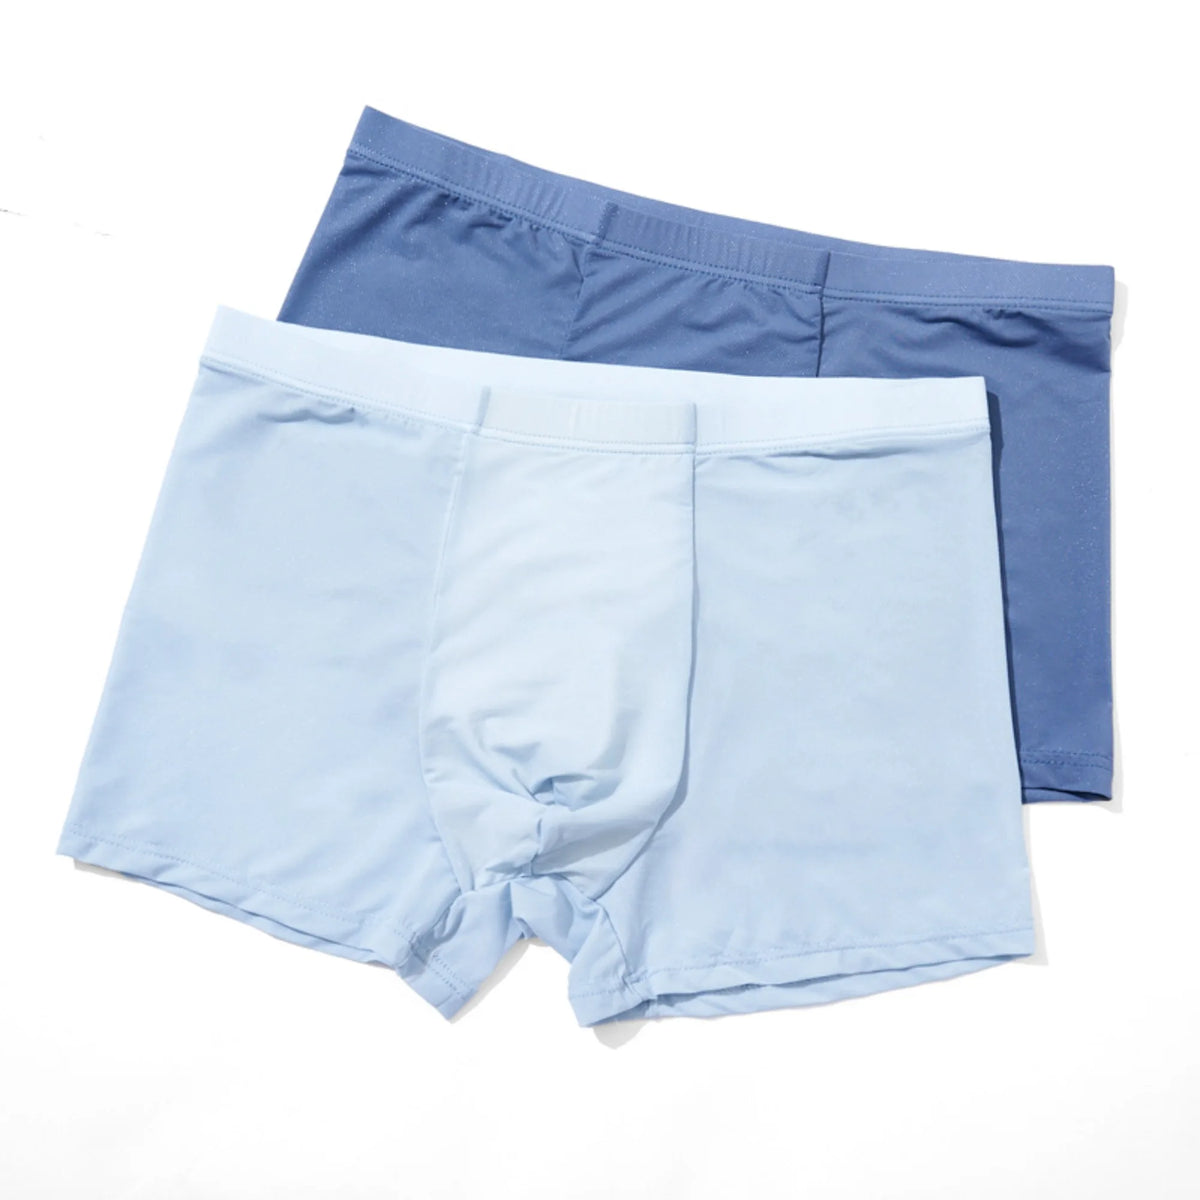 Underwear-2Pc for Men